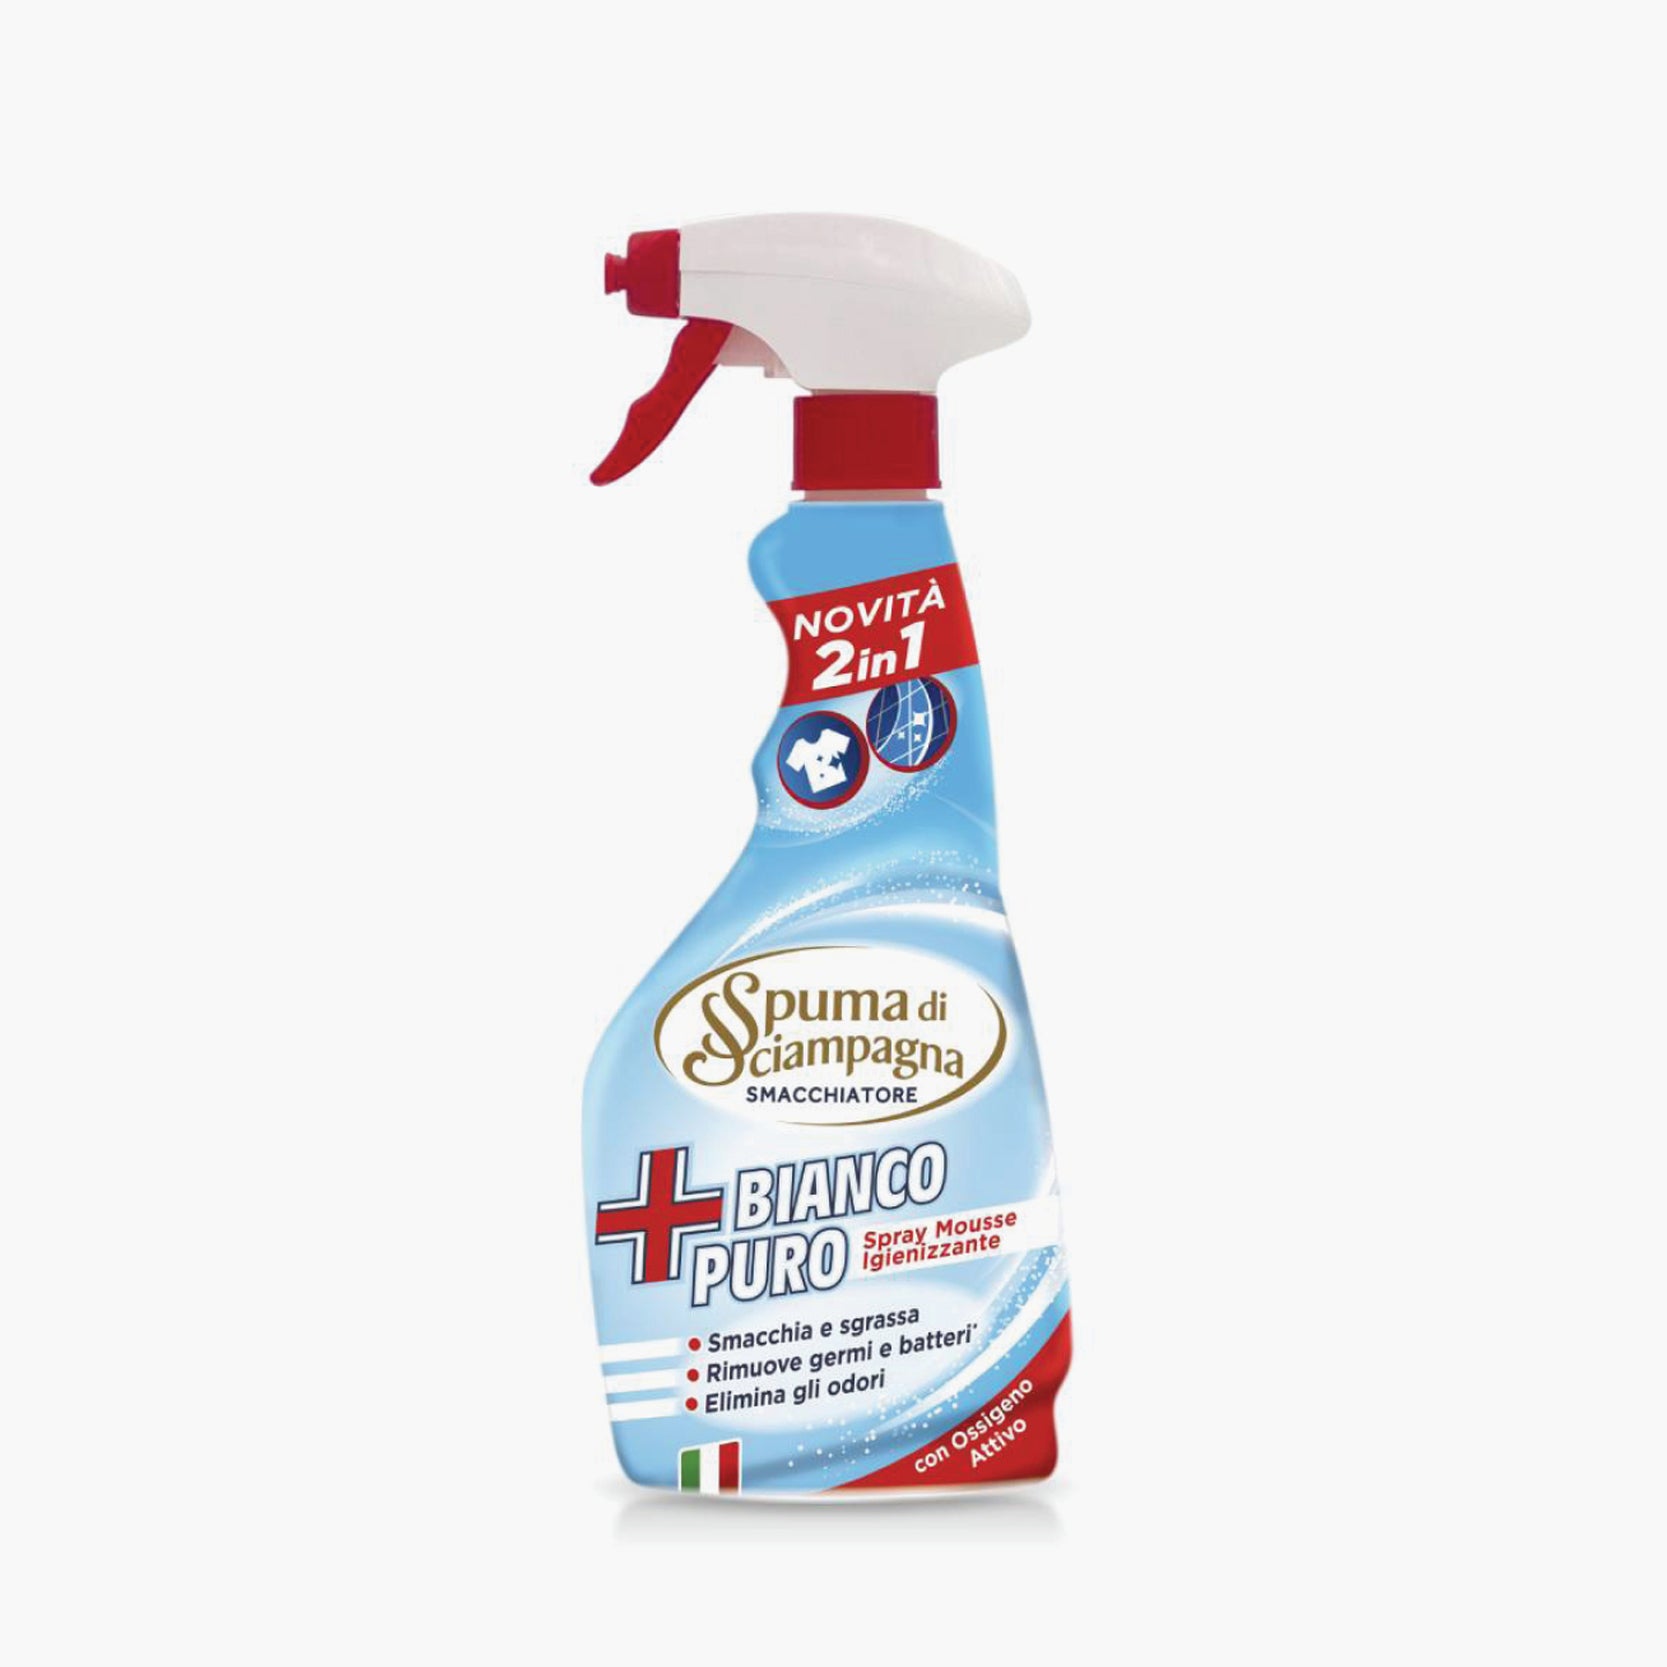 Spuma Di Sciampagna Additive Stain Remover Spray 2 IN 1 Bianco Puro 50 –  MUST_HAVES MALTA